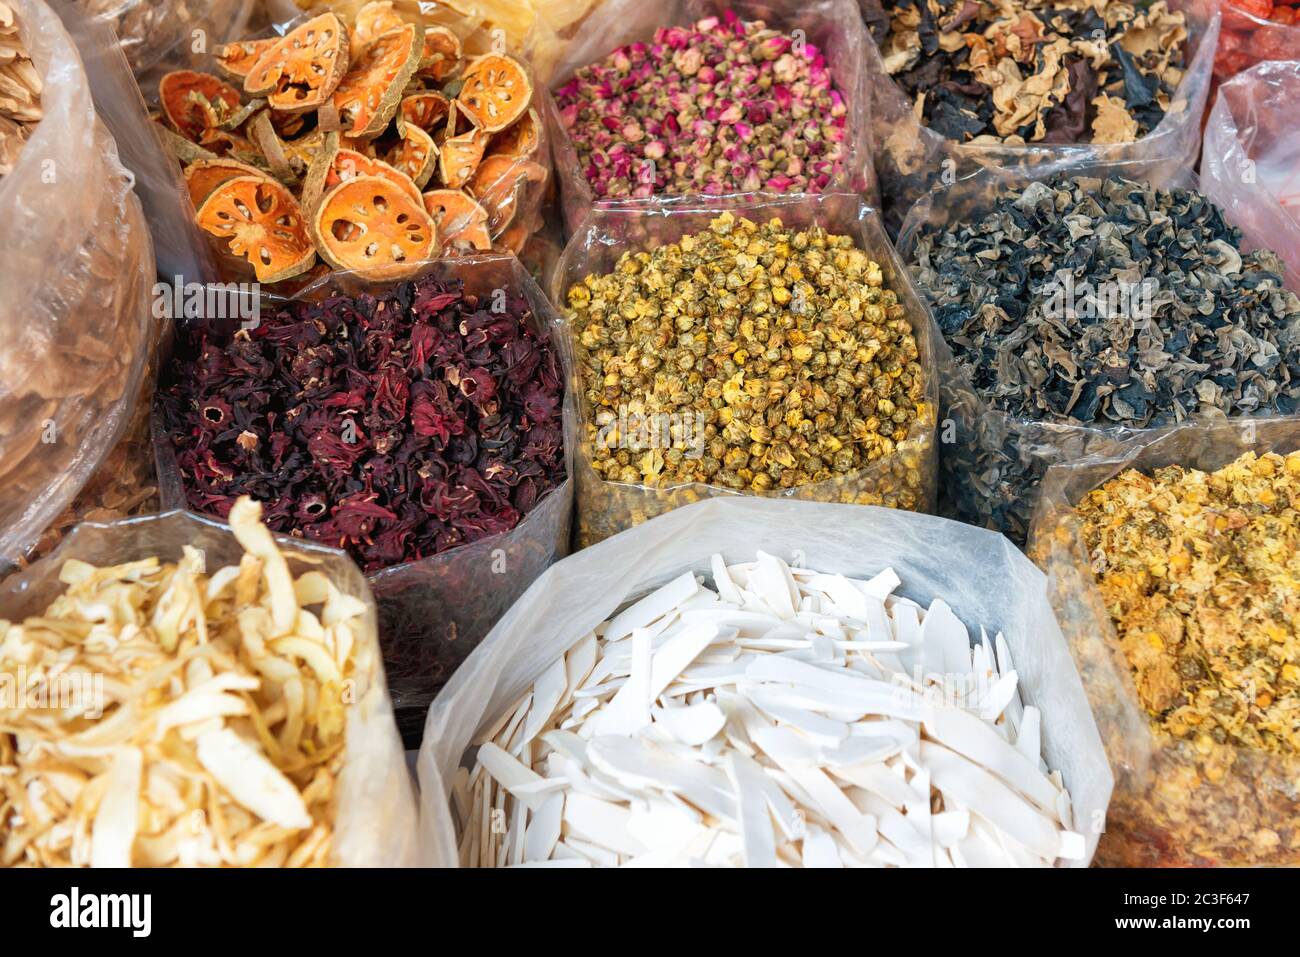 Jede Menge Tee, getrocknete Kräuter und Lebensmittelgeschäft auf dem asiatischen Straßenmarkt Stockfoto